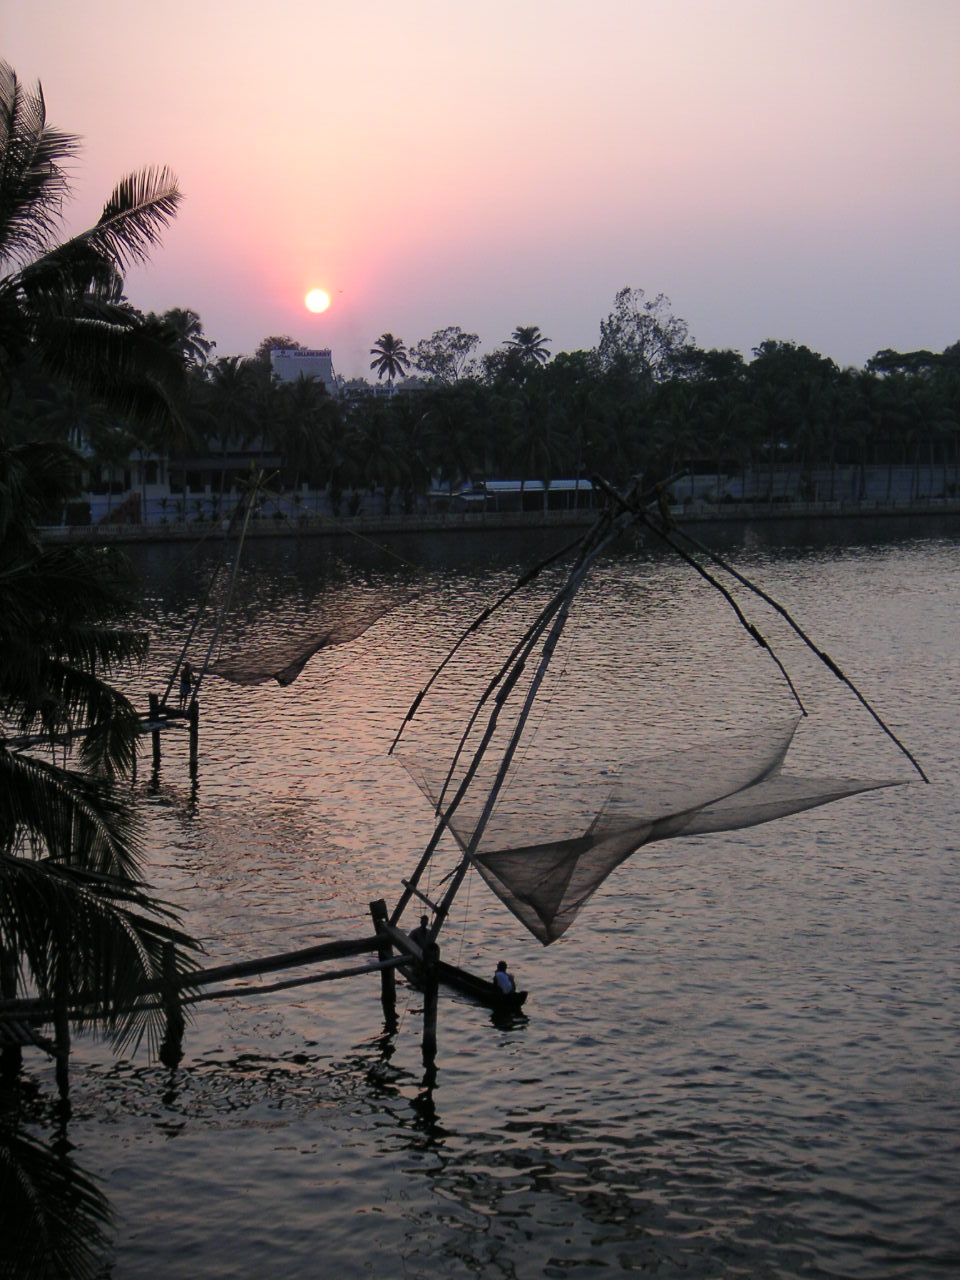 File:Chinese fishing net at kollam.JPG - Wikipedia